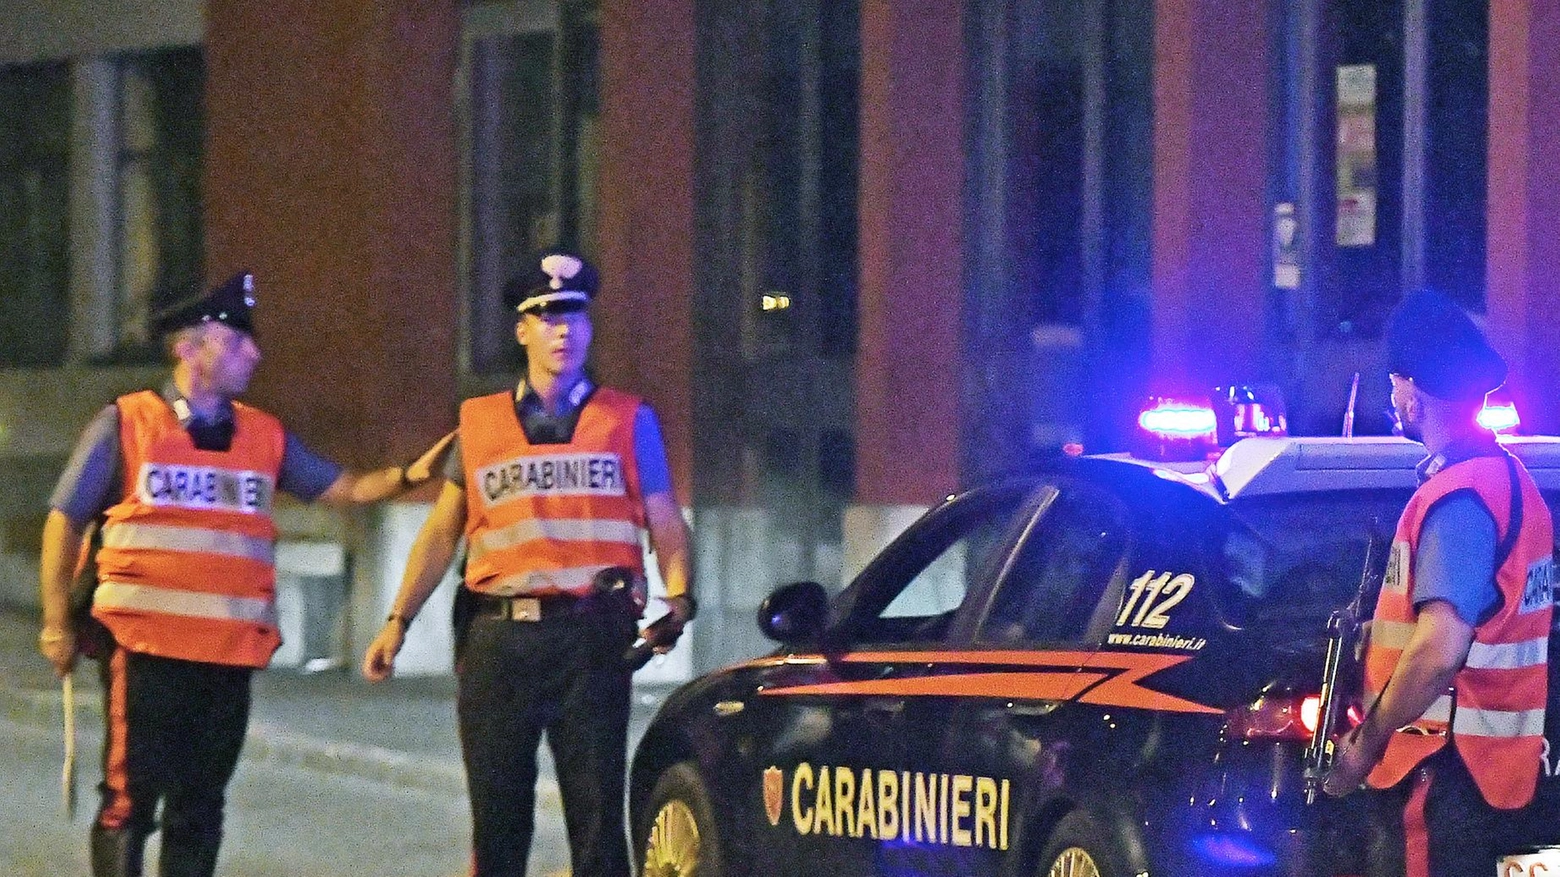 Rissa al circolo Toniolo a Ponsacco: tre uomini si sono picchiati e lanciati bottiglie di birra. Intervenuti i carabinieri, uno identificato. Indagini in corso con l'ausilio delle telecamere. Solidarietà da parte della comunità locale.